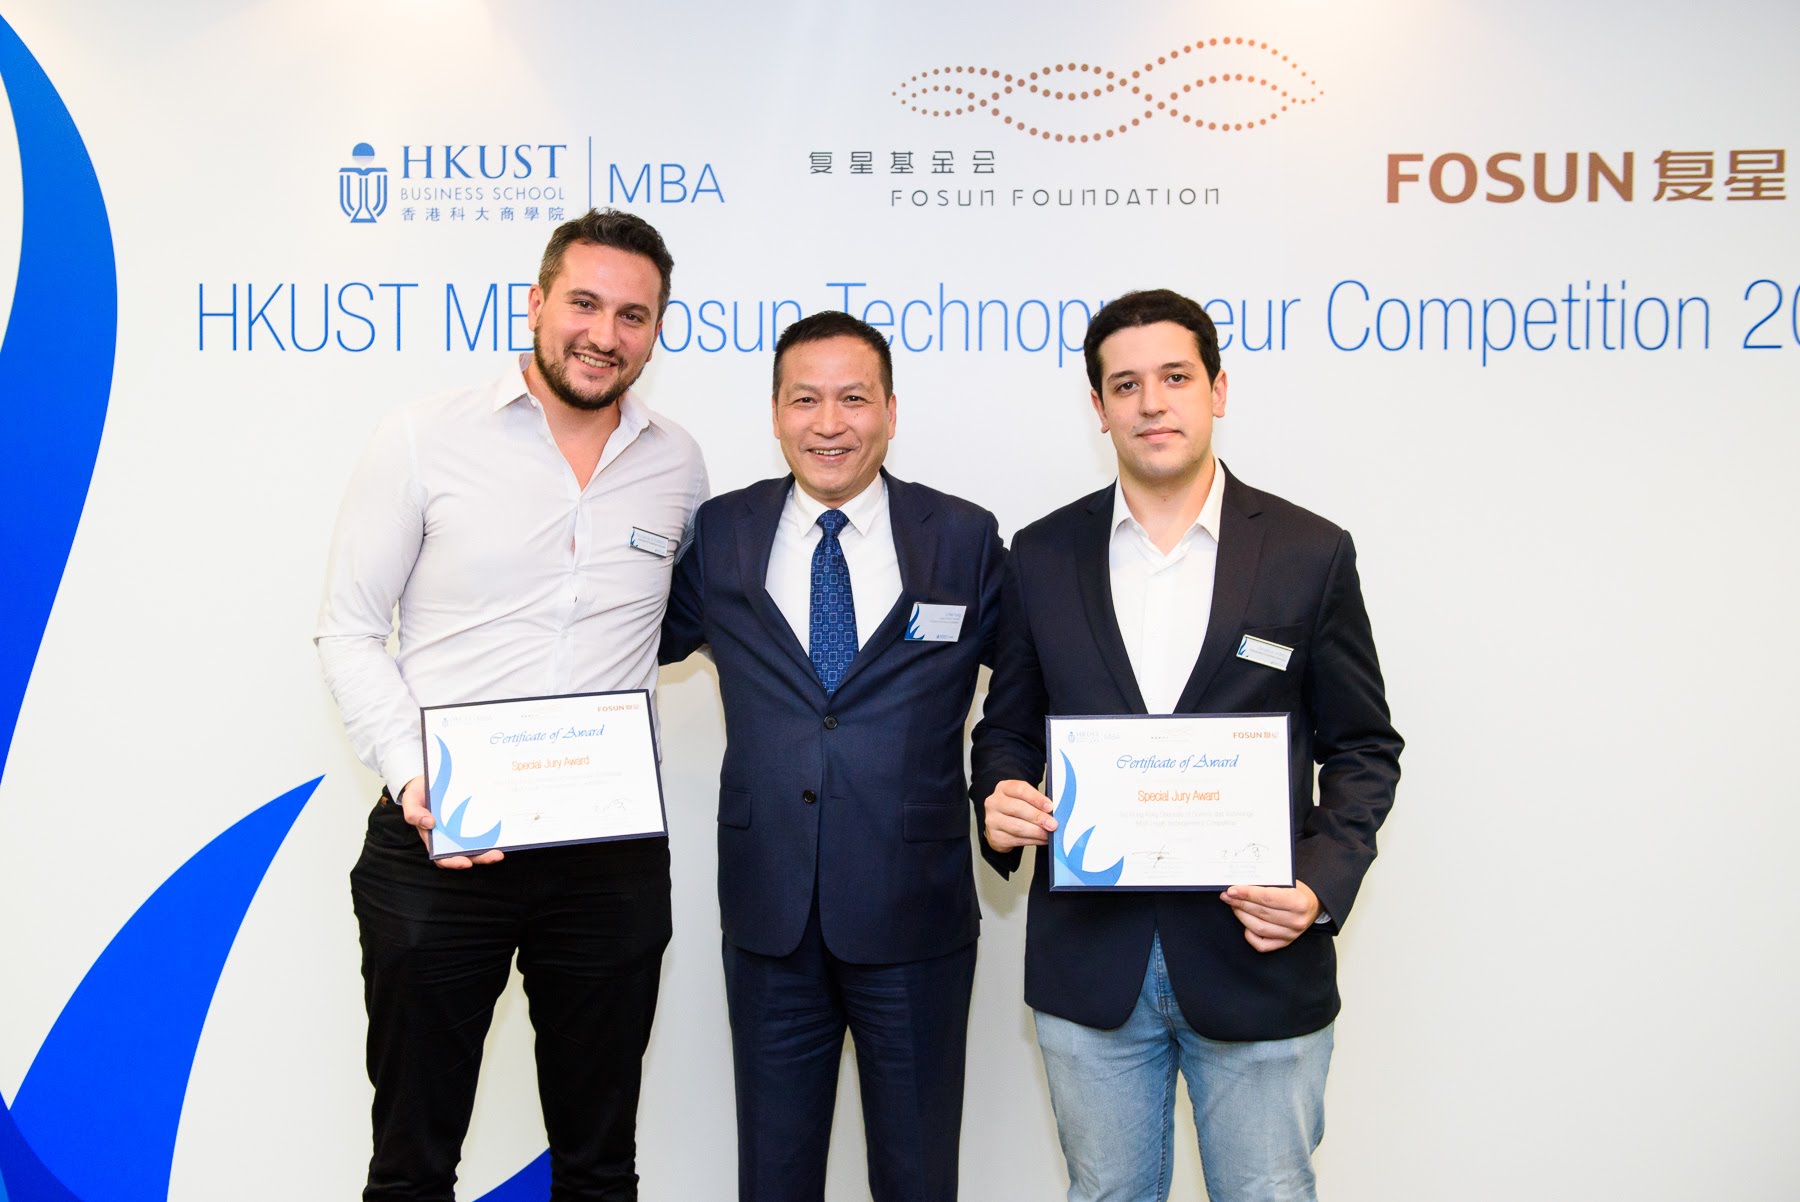 在科大商學院與復星基金會合辦的2018科技創業大賽上，Alex（左）參與創辦的3DK Tech獲頒「評審團特別獎」。